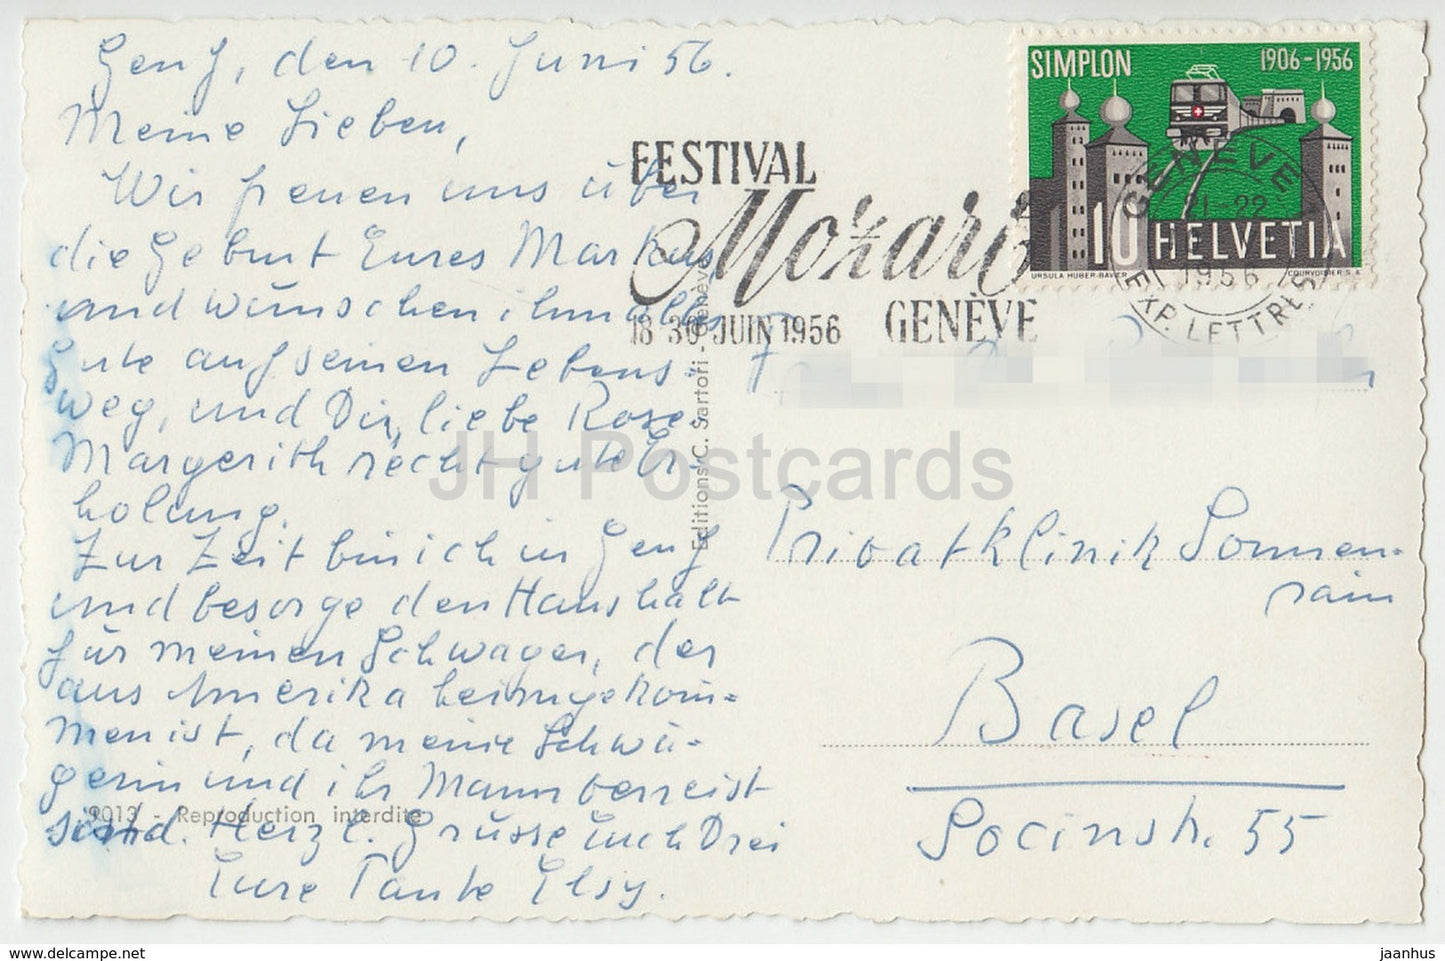 Genève - Genève - Hôtel de la Paix - monument Brunswick et ville - pont - 1956 - Suisse - occasion